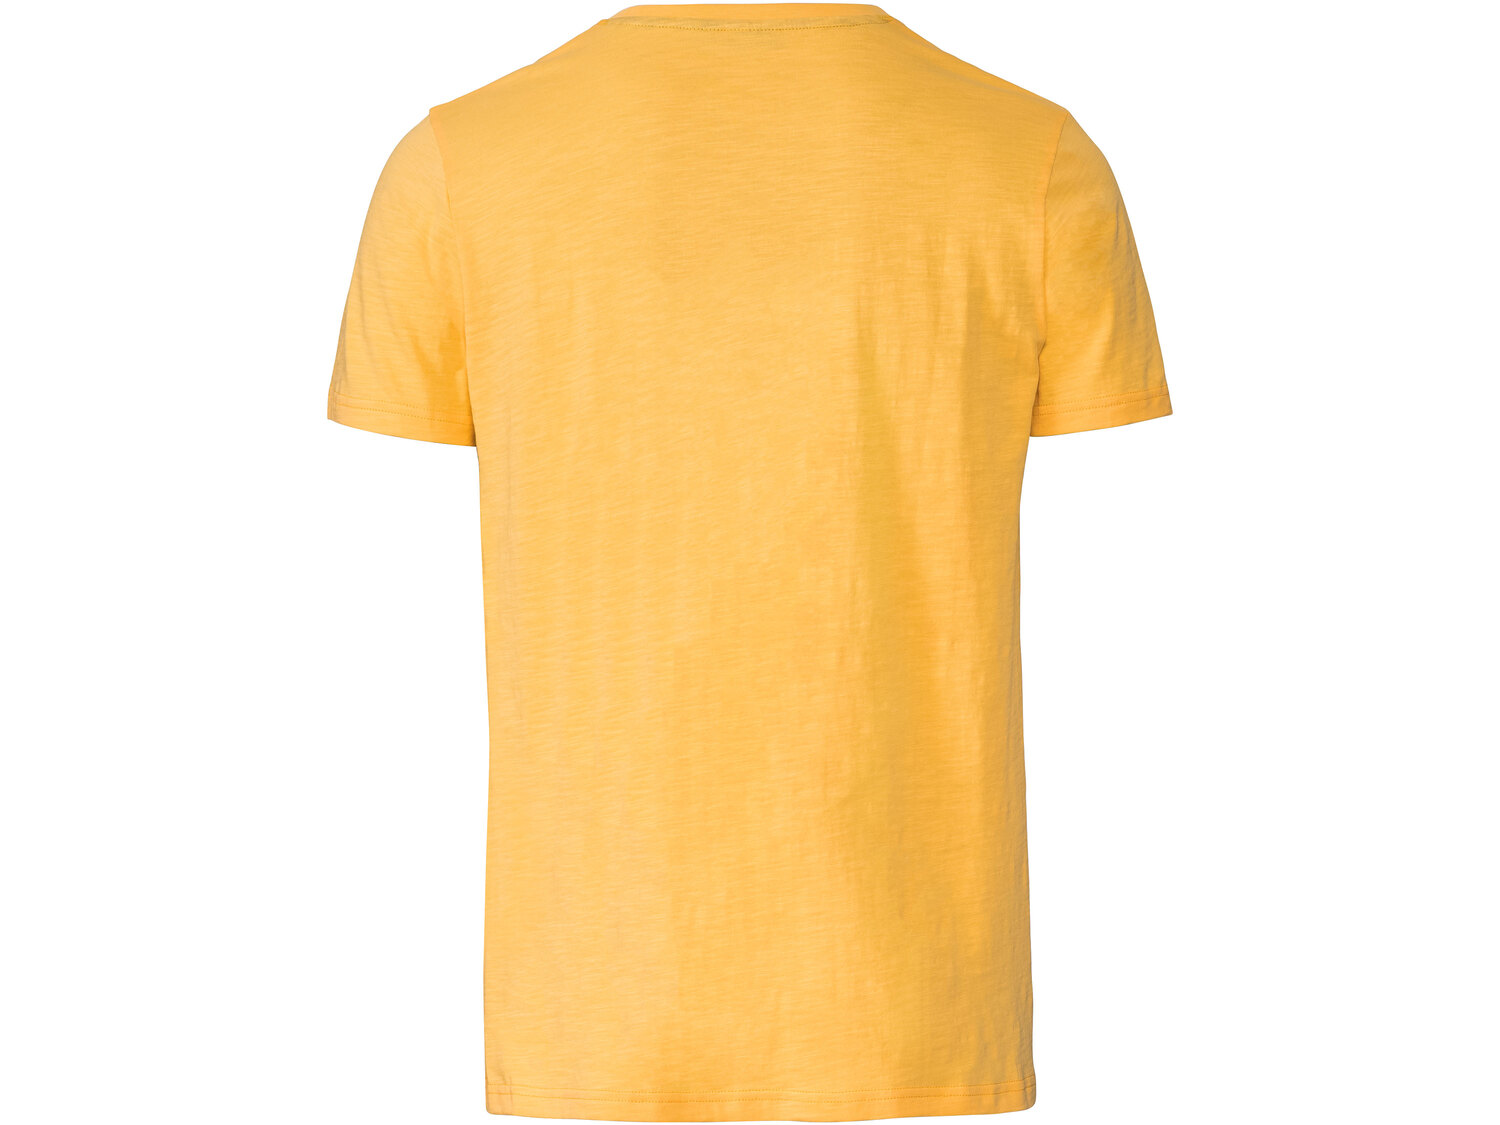 T-shirt męski , cena 21,99 PLN 
- rozmiary: M-XL
Dostępne rozmiary

Opis

- oeko
- ...